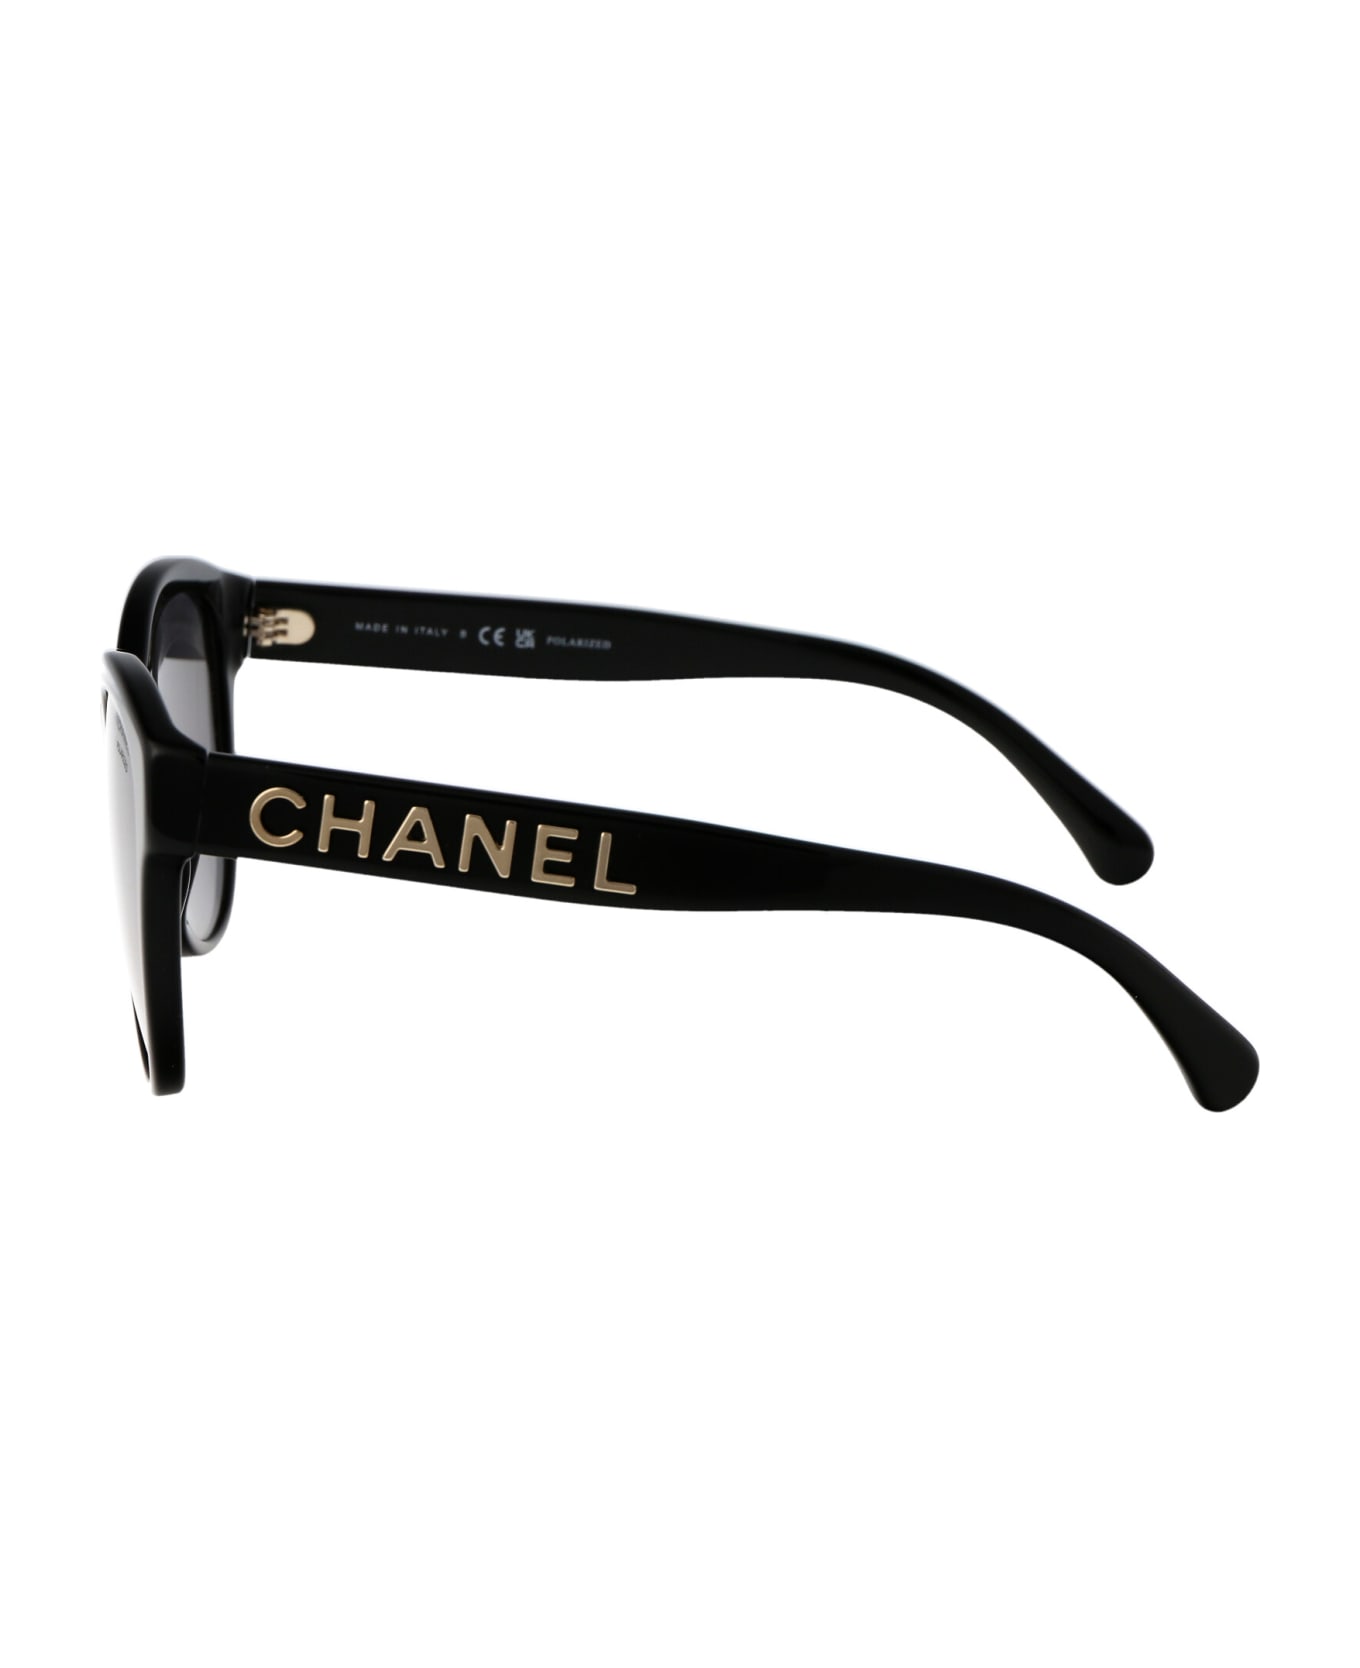 Chanel 0ch5458 Sunglasses - C622T8 BLACK サングラス